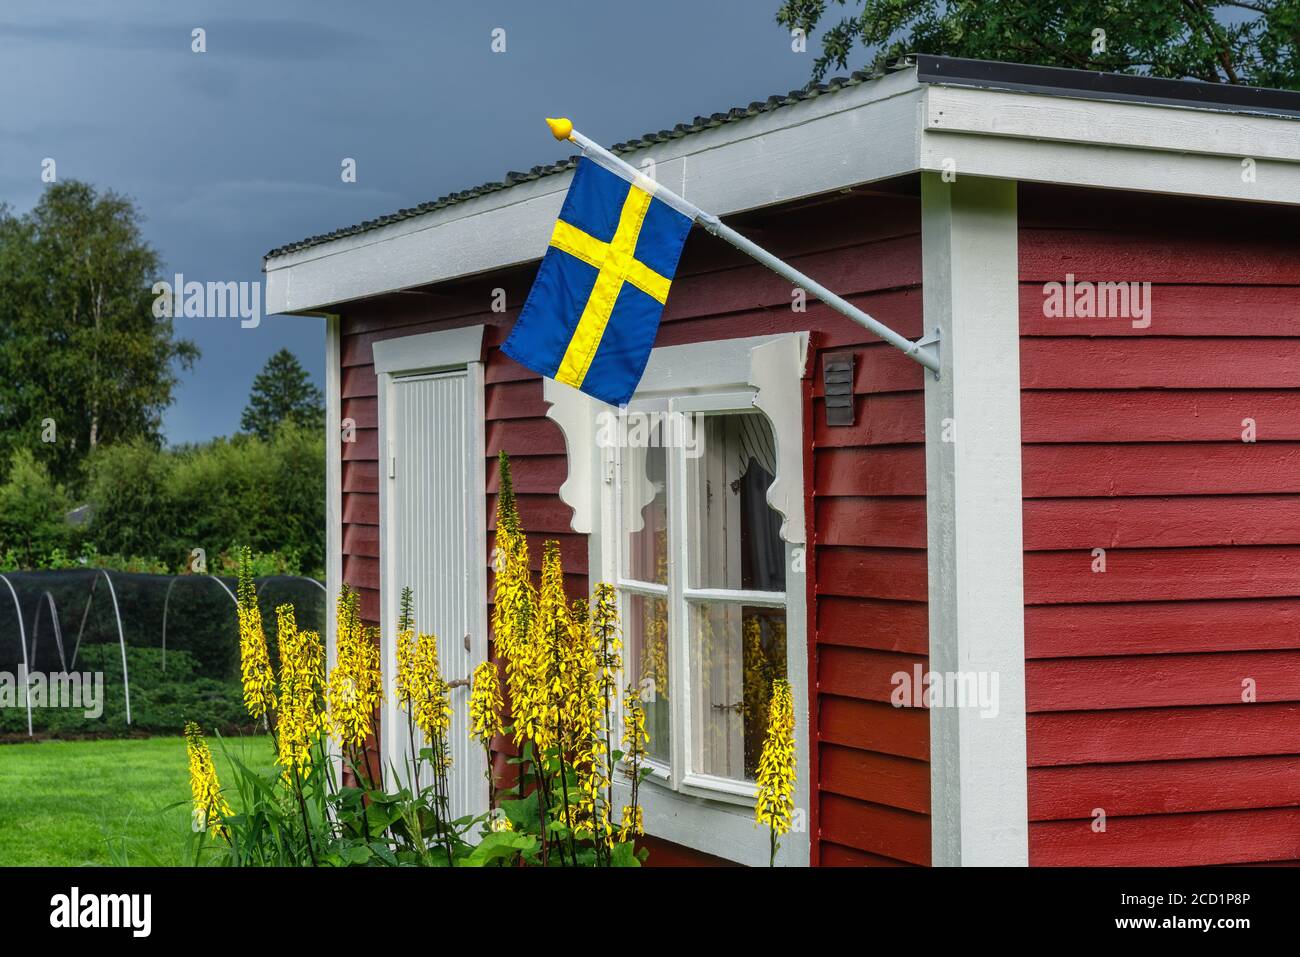 Drapeau suédois sur le traditionnel suédois petit cottage en bois rouge, fenêtre blanche, porte. Jour d'été après la pluie, fleurs jaunes, arbres verts et paille Banque D'Images